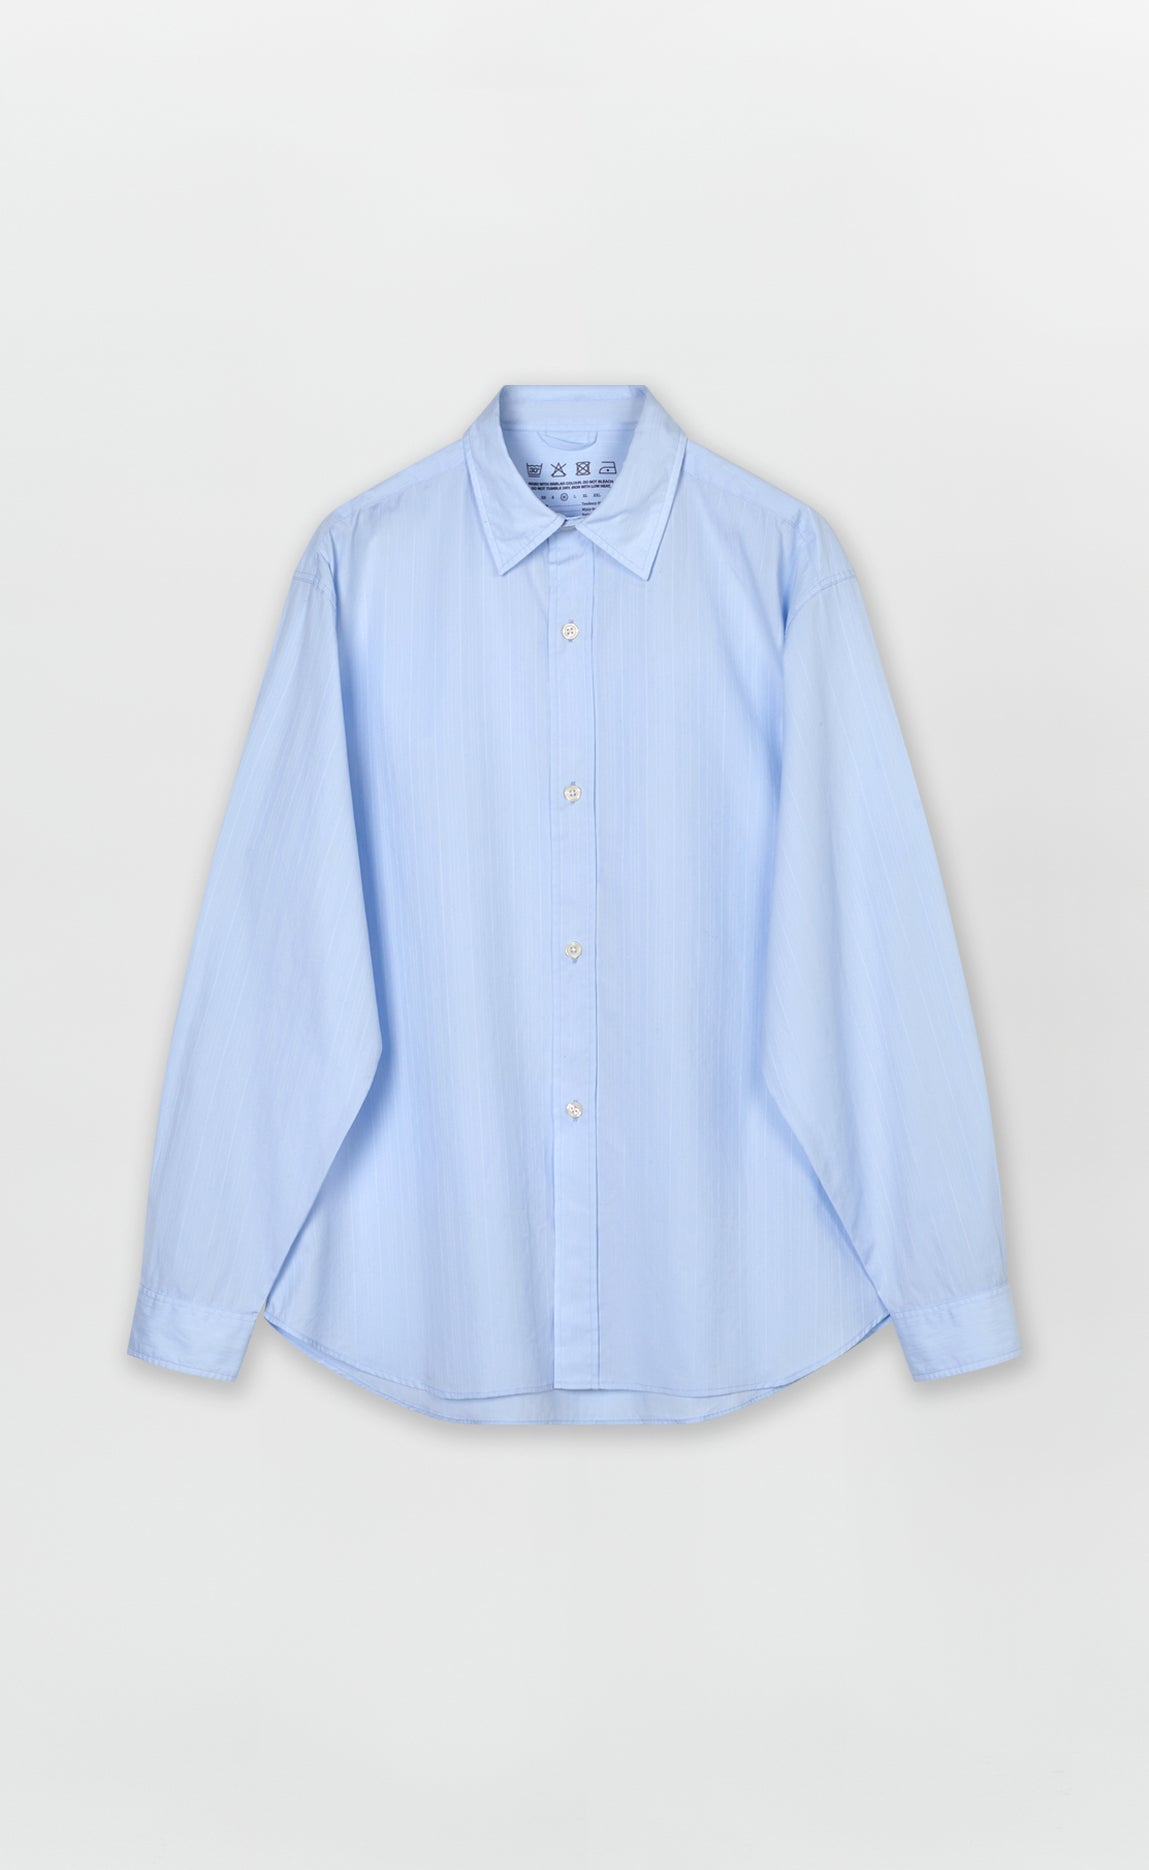 Tendency Shirt - Light Blue Stripe